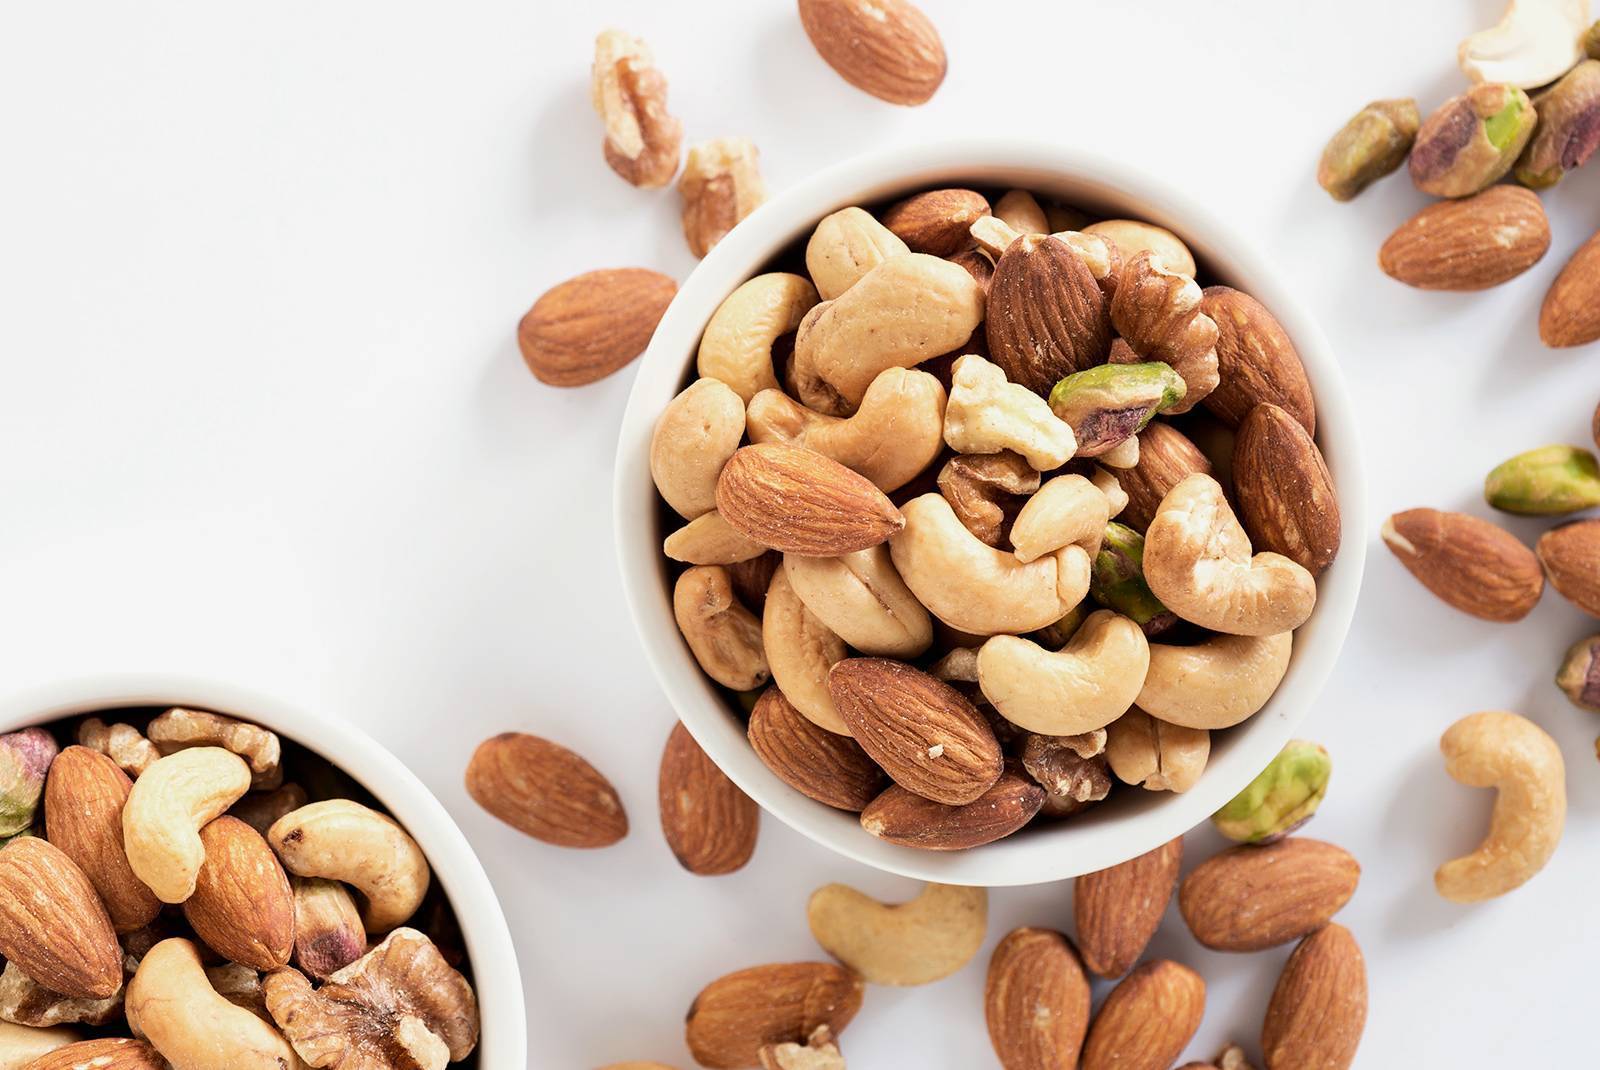 Хочу похудеть: можно ли есть арахис при похудении?